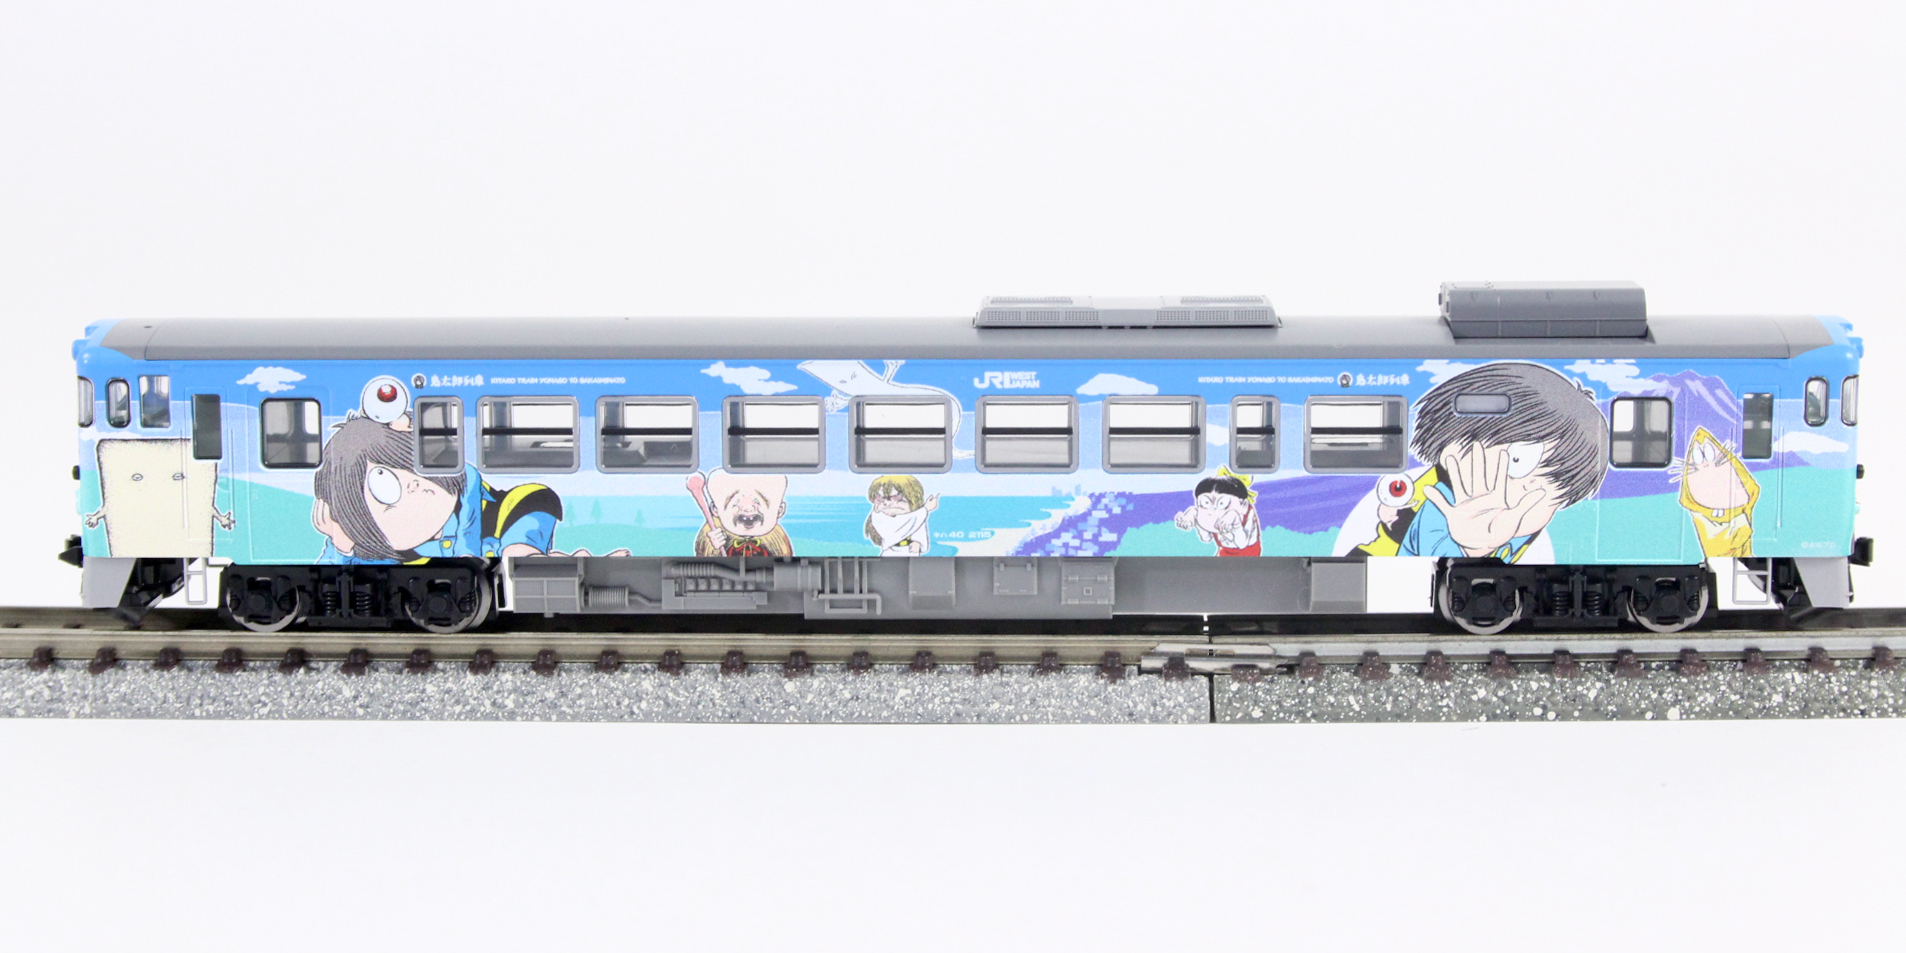 純日本製動作確認済 鉄道模型 Nゲージ TOMIX 98054 JR キハ40-2000形ディーゼルカー(鬼太郎列車・ねこ娘列車)セット 店舗受取可 ディーゼルカー